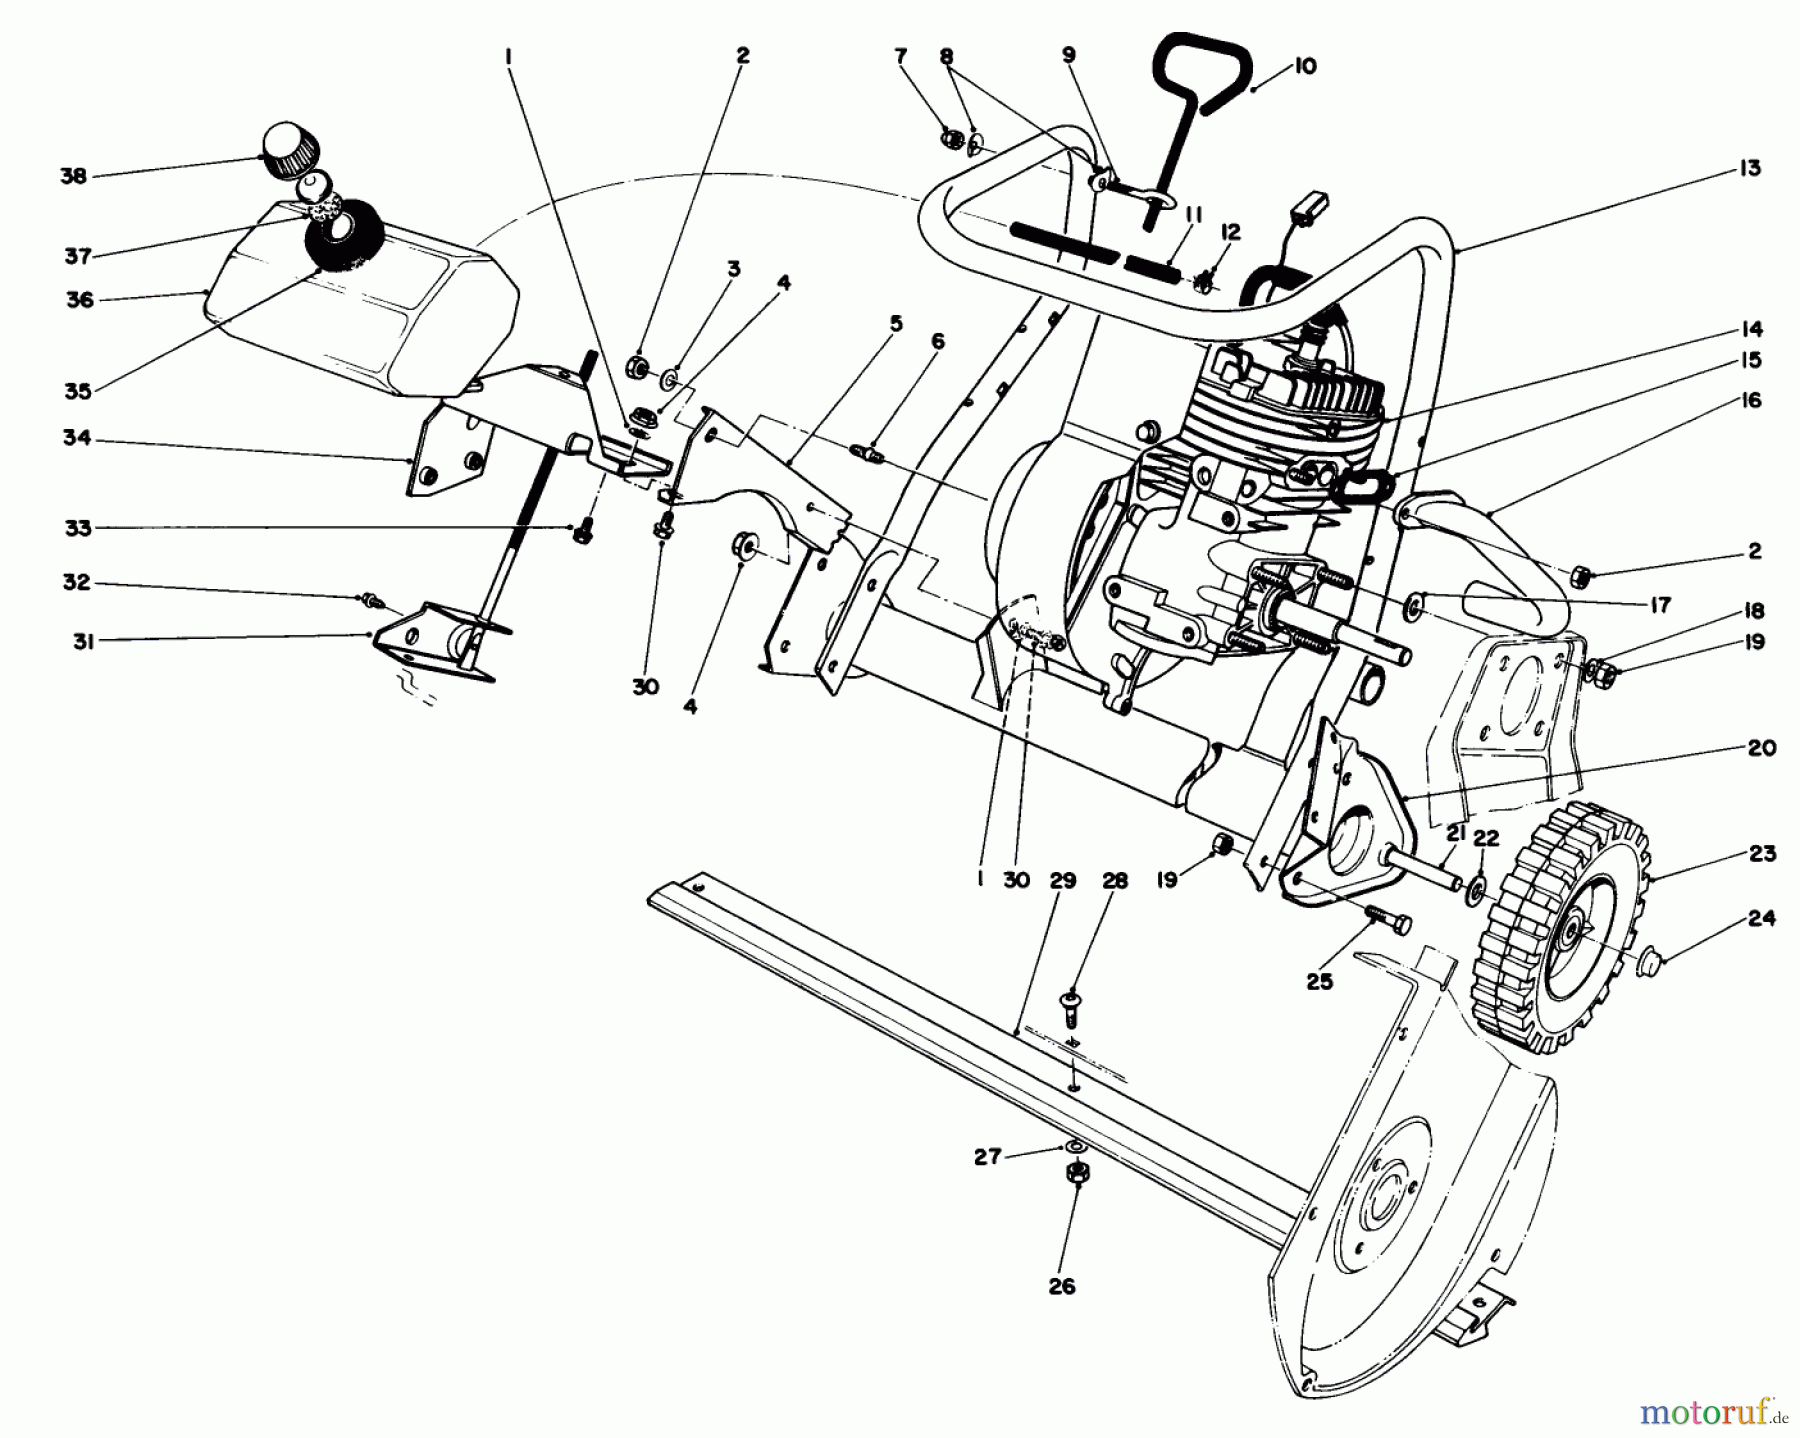  Toro Neu Snow Blowers/Snow Throwers Seite 1 38165 (S-620) - Toro S-620 Snowthrower, 1991 (1000001-1999999) ENGINE ASSEMBLY